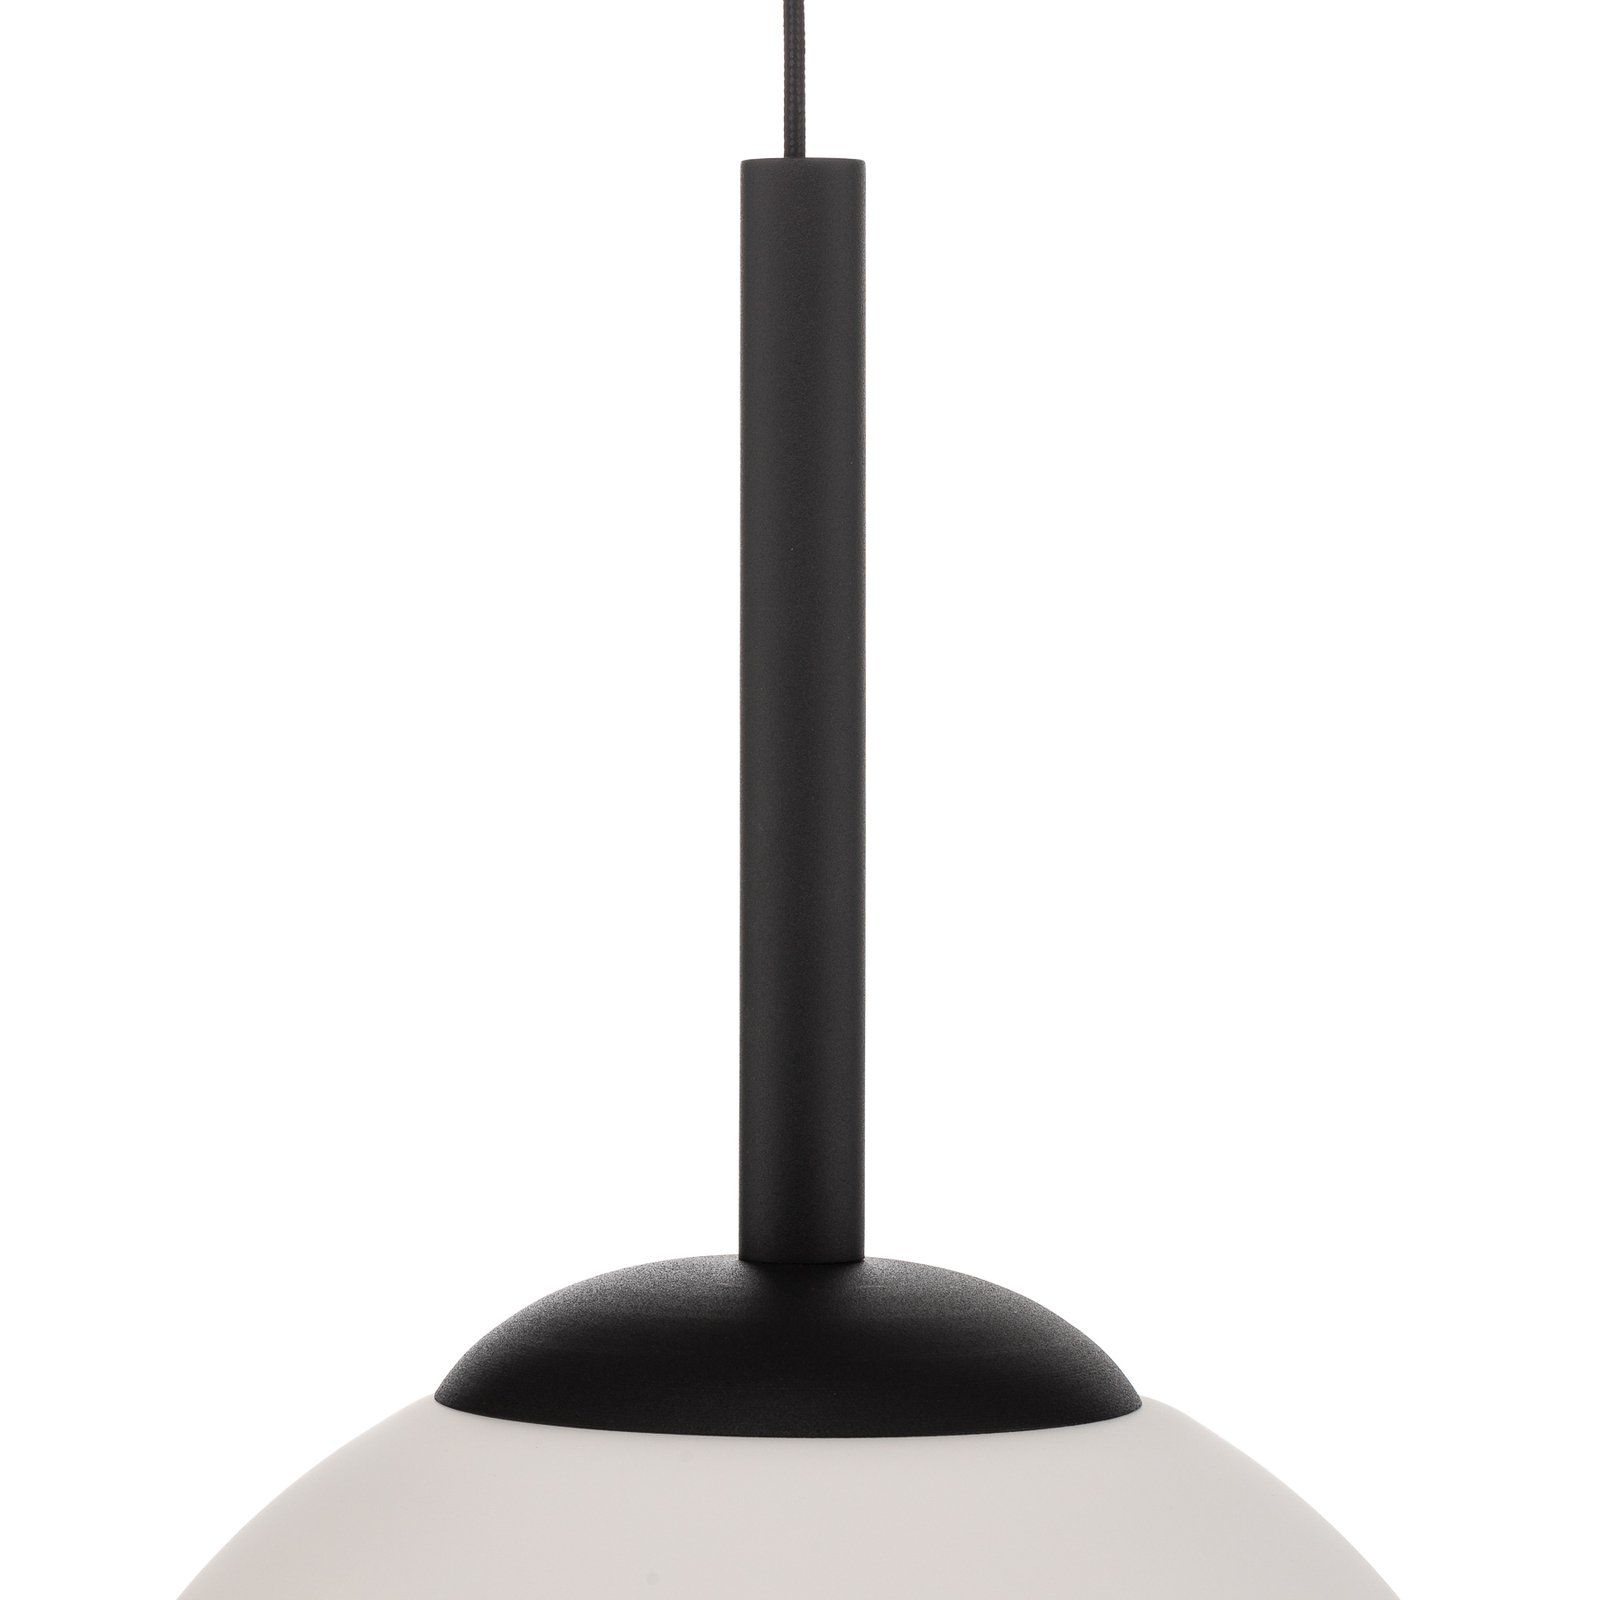 Riippuvalo Bosso, 1-lamppuinen, valko/musta, 40 cm